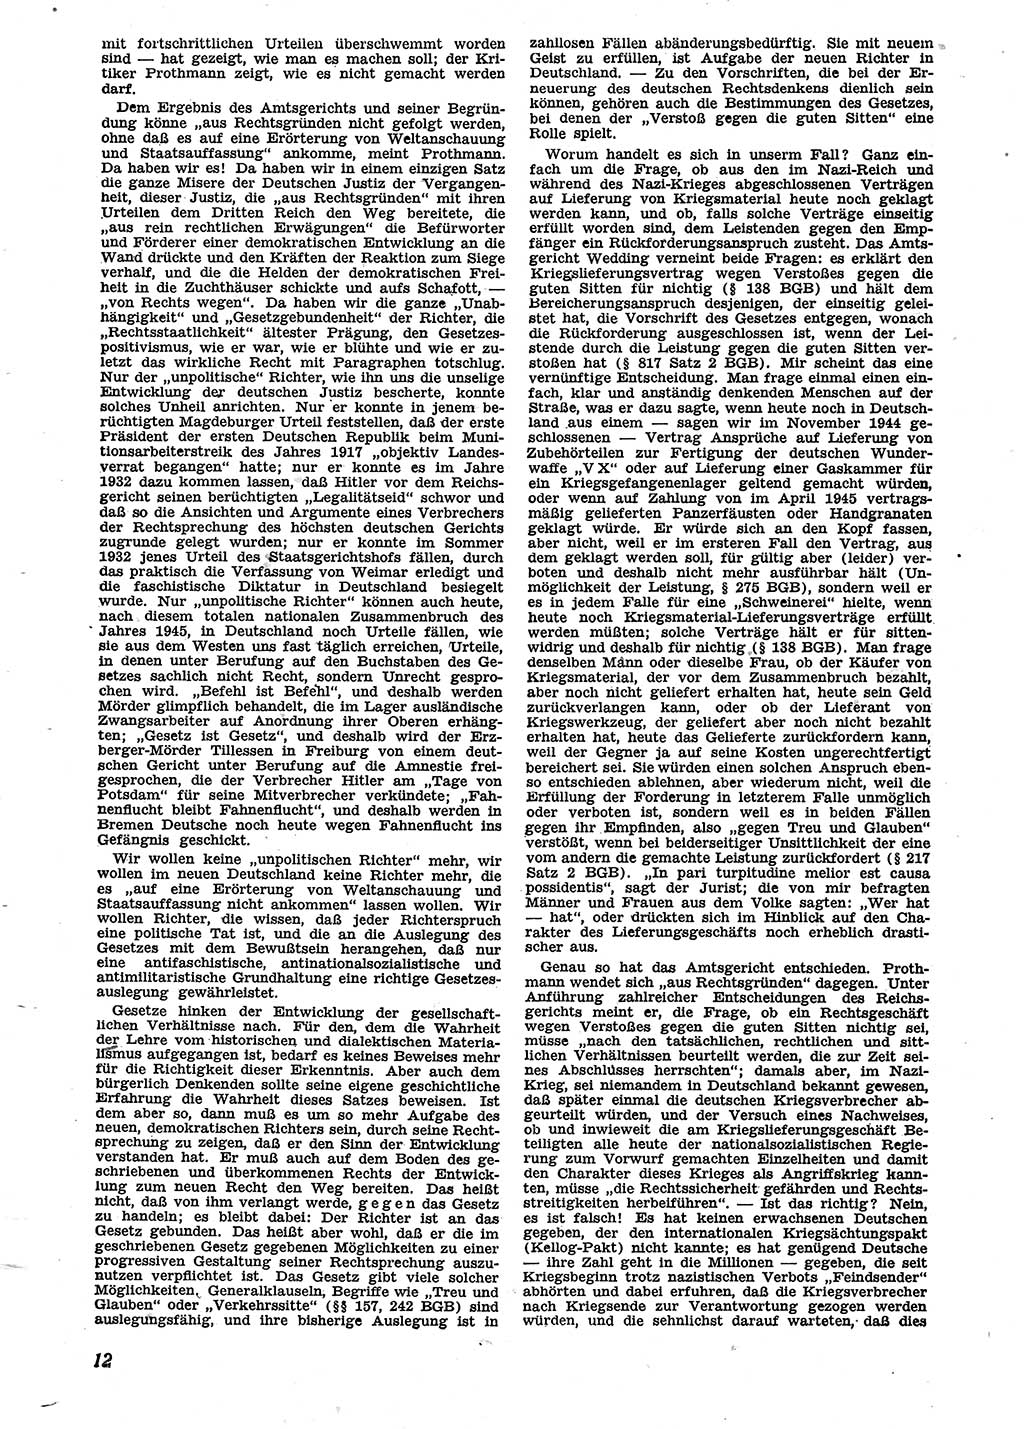 Neue Justiz (NJ), Zeitschrift für Recht und Rechtswissenschaft [Sowjetische Besatzungszone (SBZ) Deutschland], 2. Jahrgang 1948, Seite 12 (NJ SBZ Dtl. 1948, S. 12)